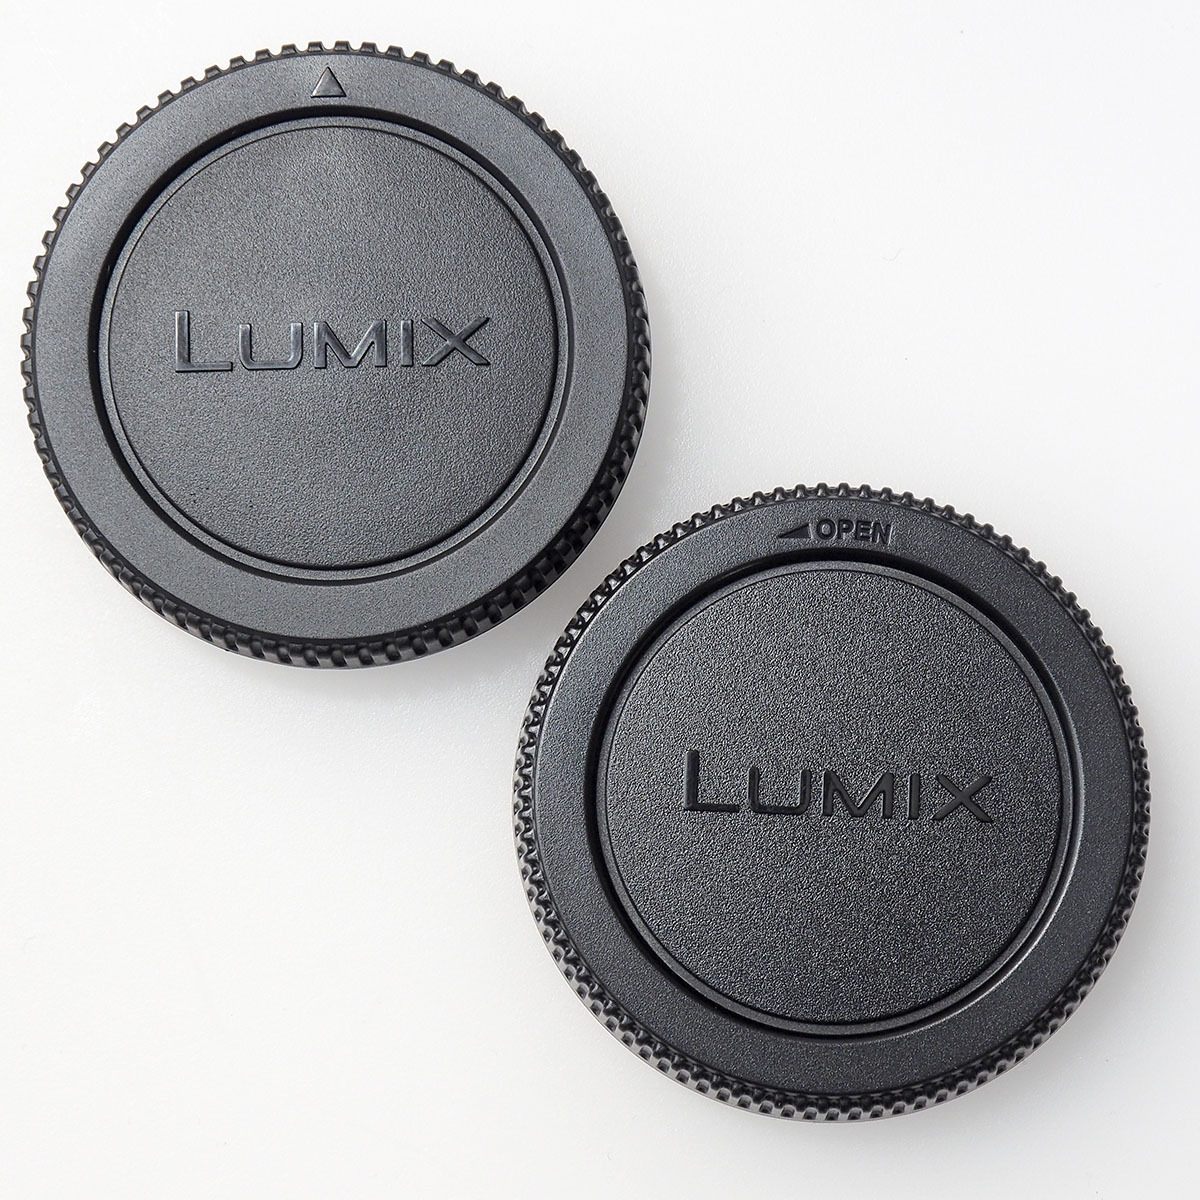 パナソニック純正 LUMIX リア レンズキャップ + カメラ ボディキャップ セット マイクロフォーサーズ規格用 オリンパスも可 開封未使用品_紛失された方、また予備にどうでしょうか？